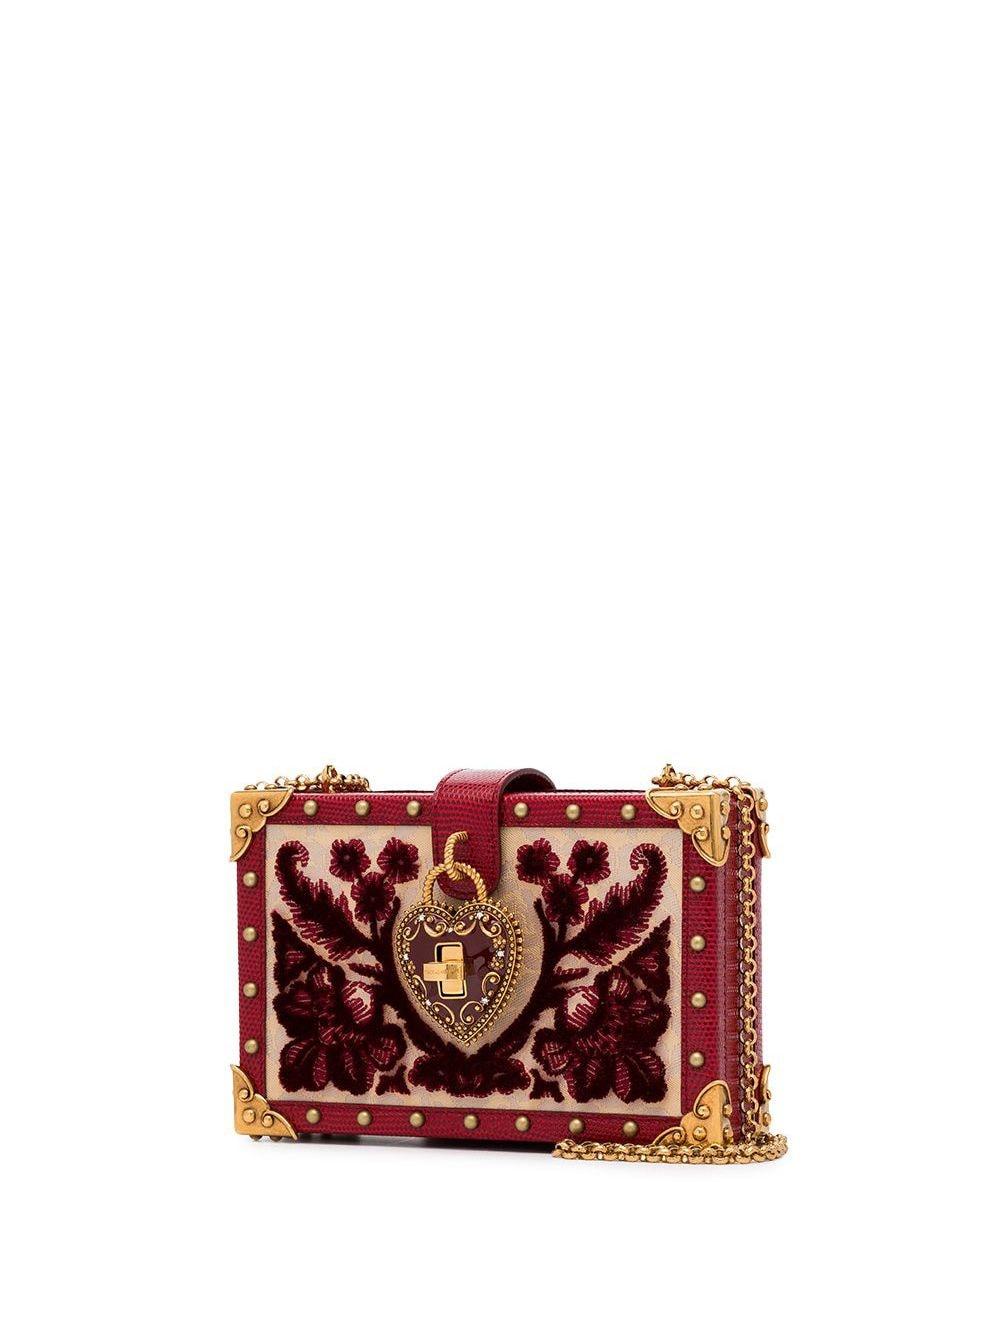 Dolce & Gabbana Heart Lock Embellished Velvet Box Bag in Red - Lyst